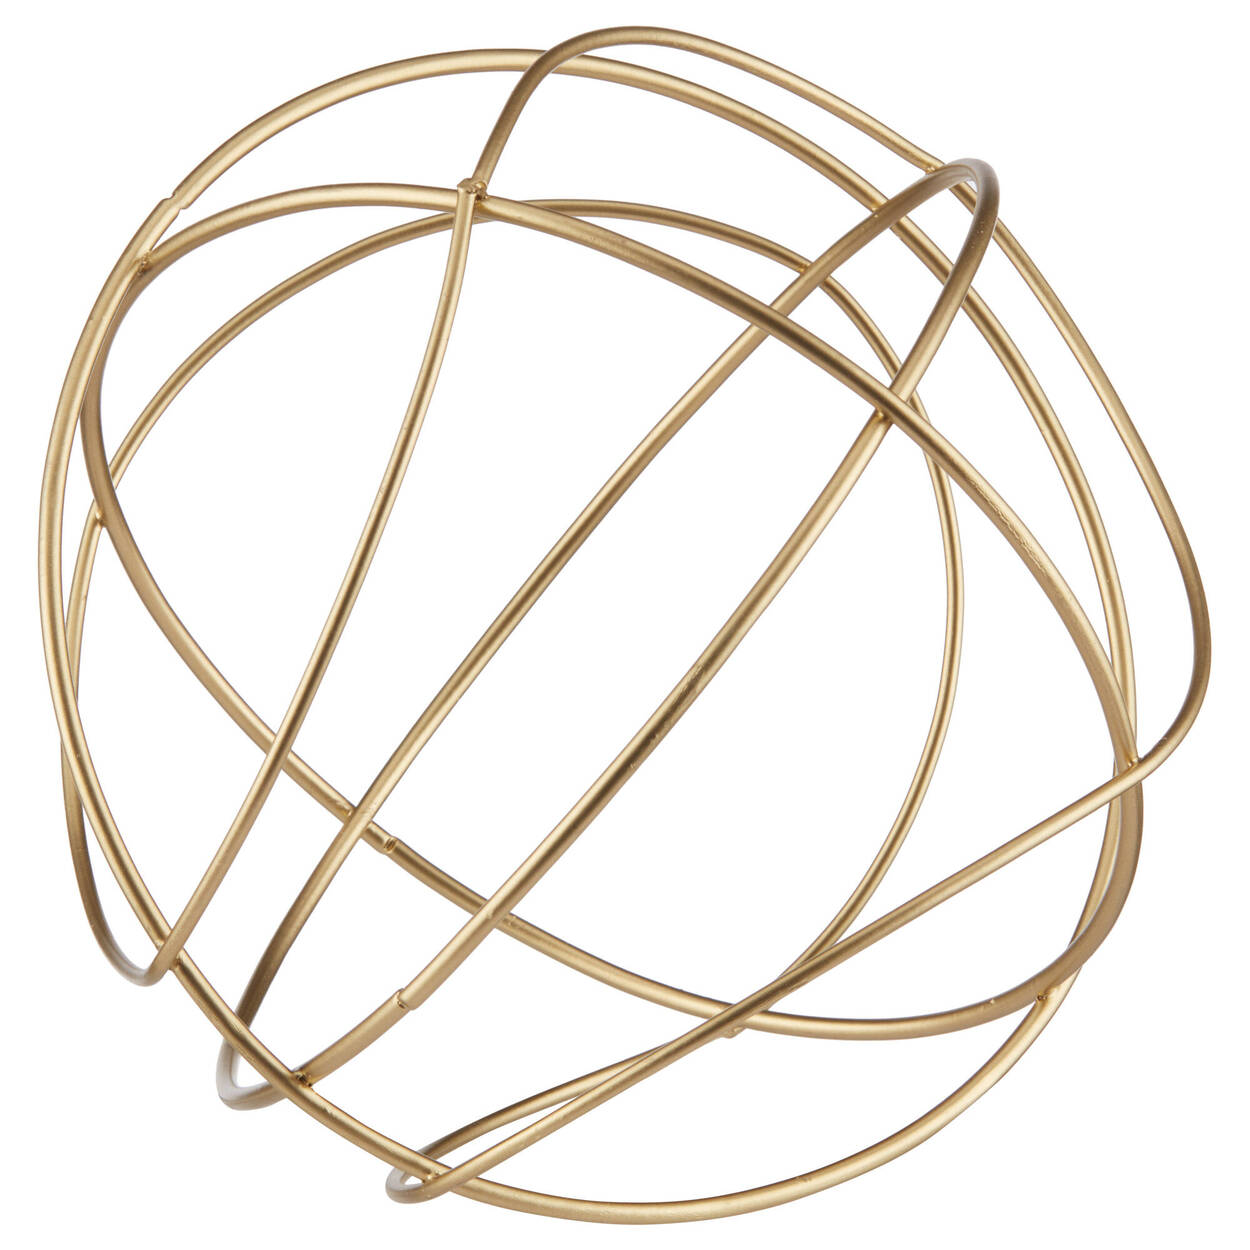 Metal Wire Decorative Ball | Bouclair.com